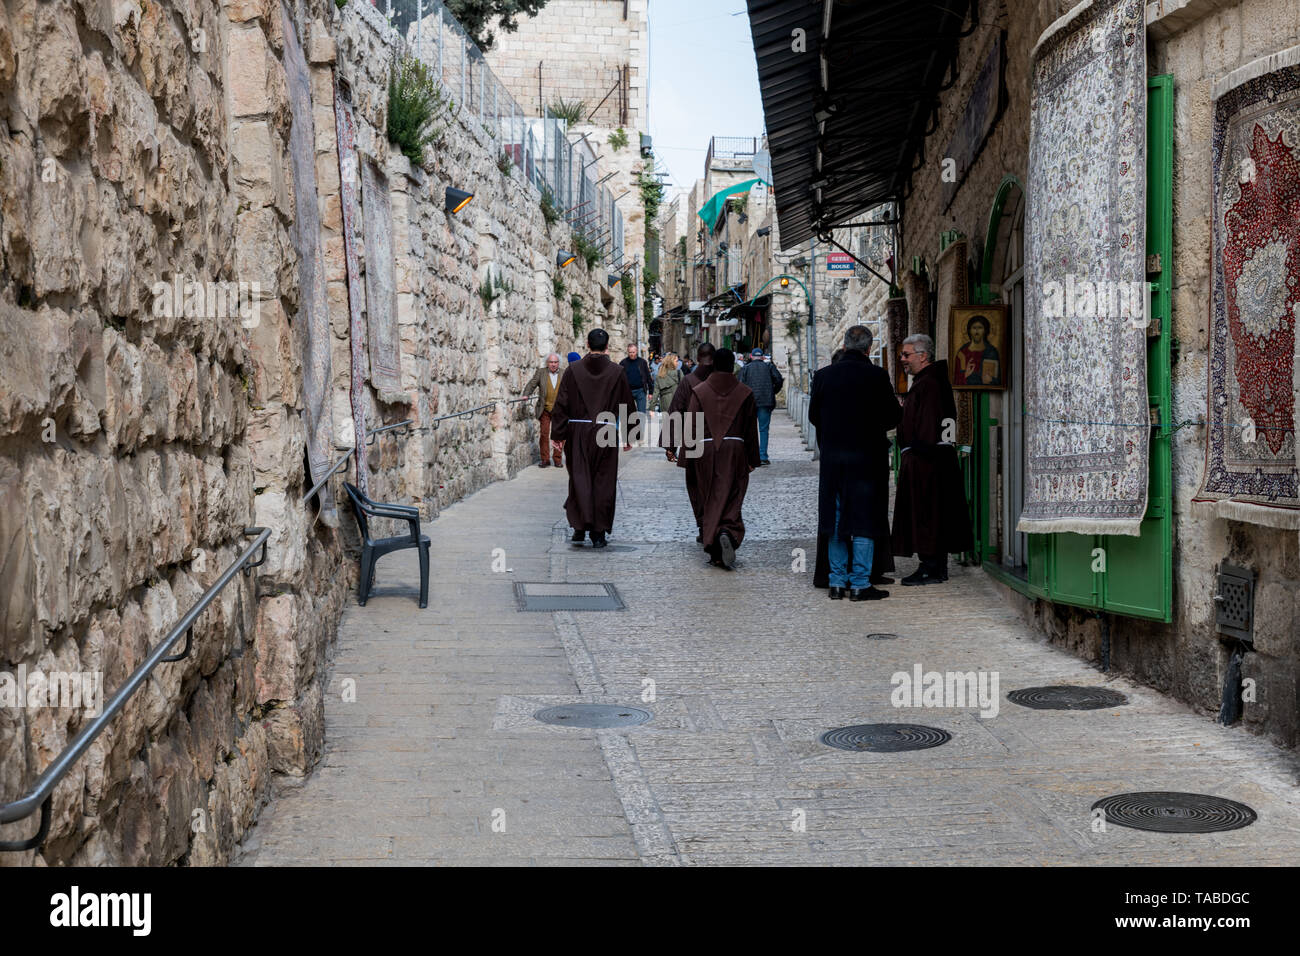 Jerusalén, Israel, 27-03-2019:monjes caminando por las calles de Jerusalén, Jerusalén es la ciudad religiosa de Israel Foto de stock